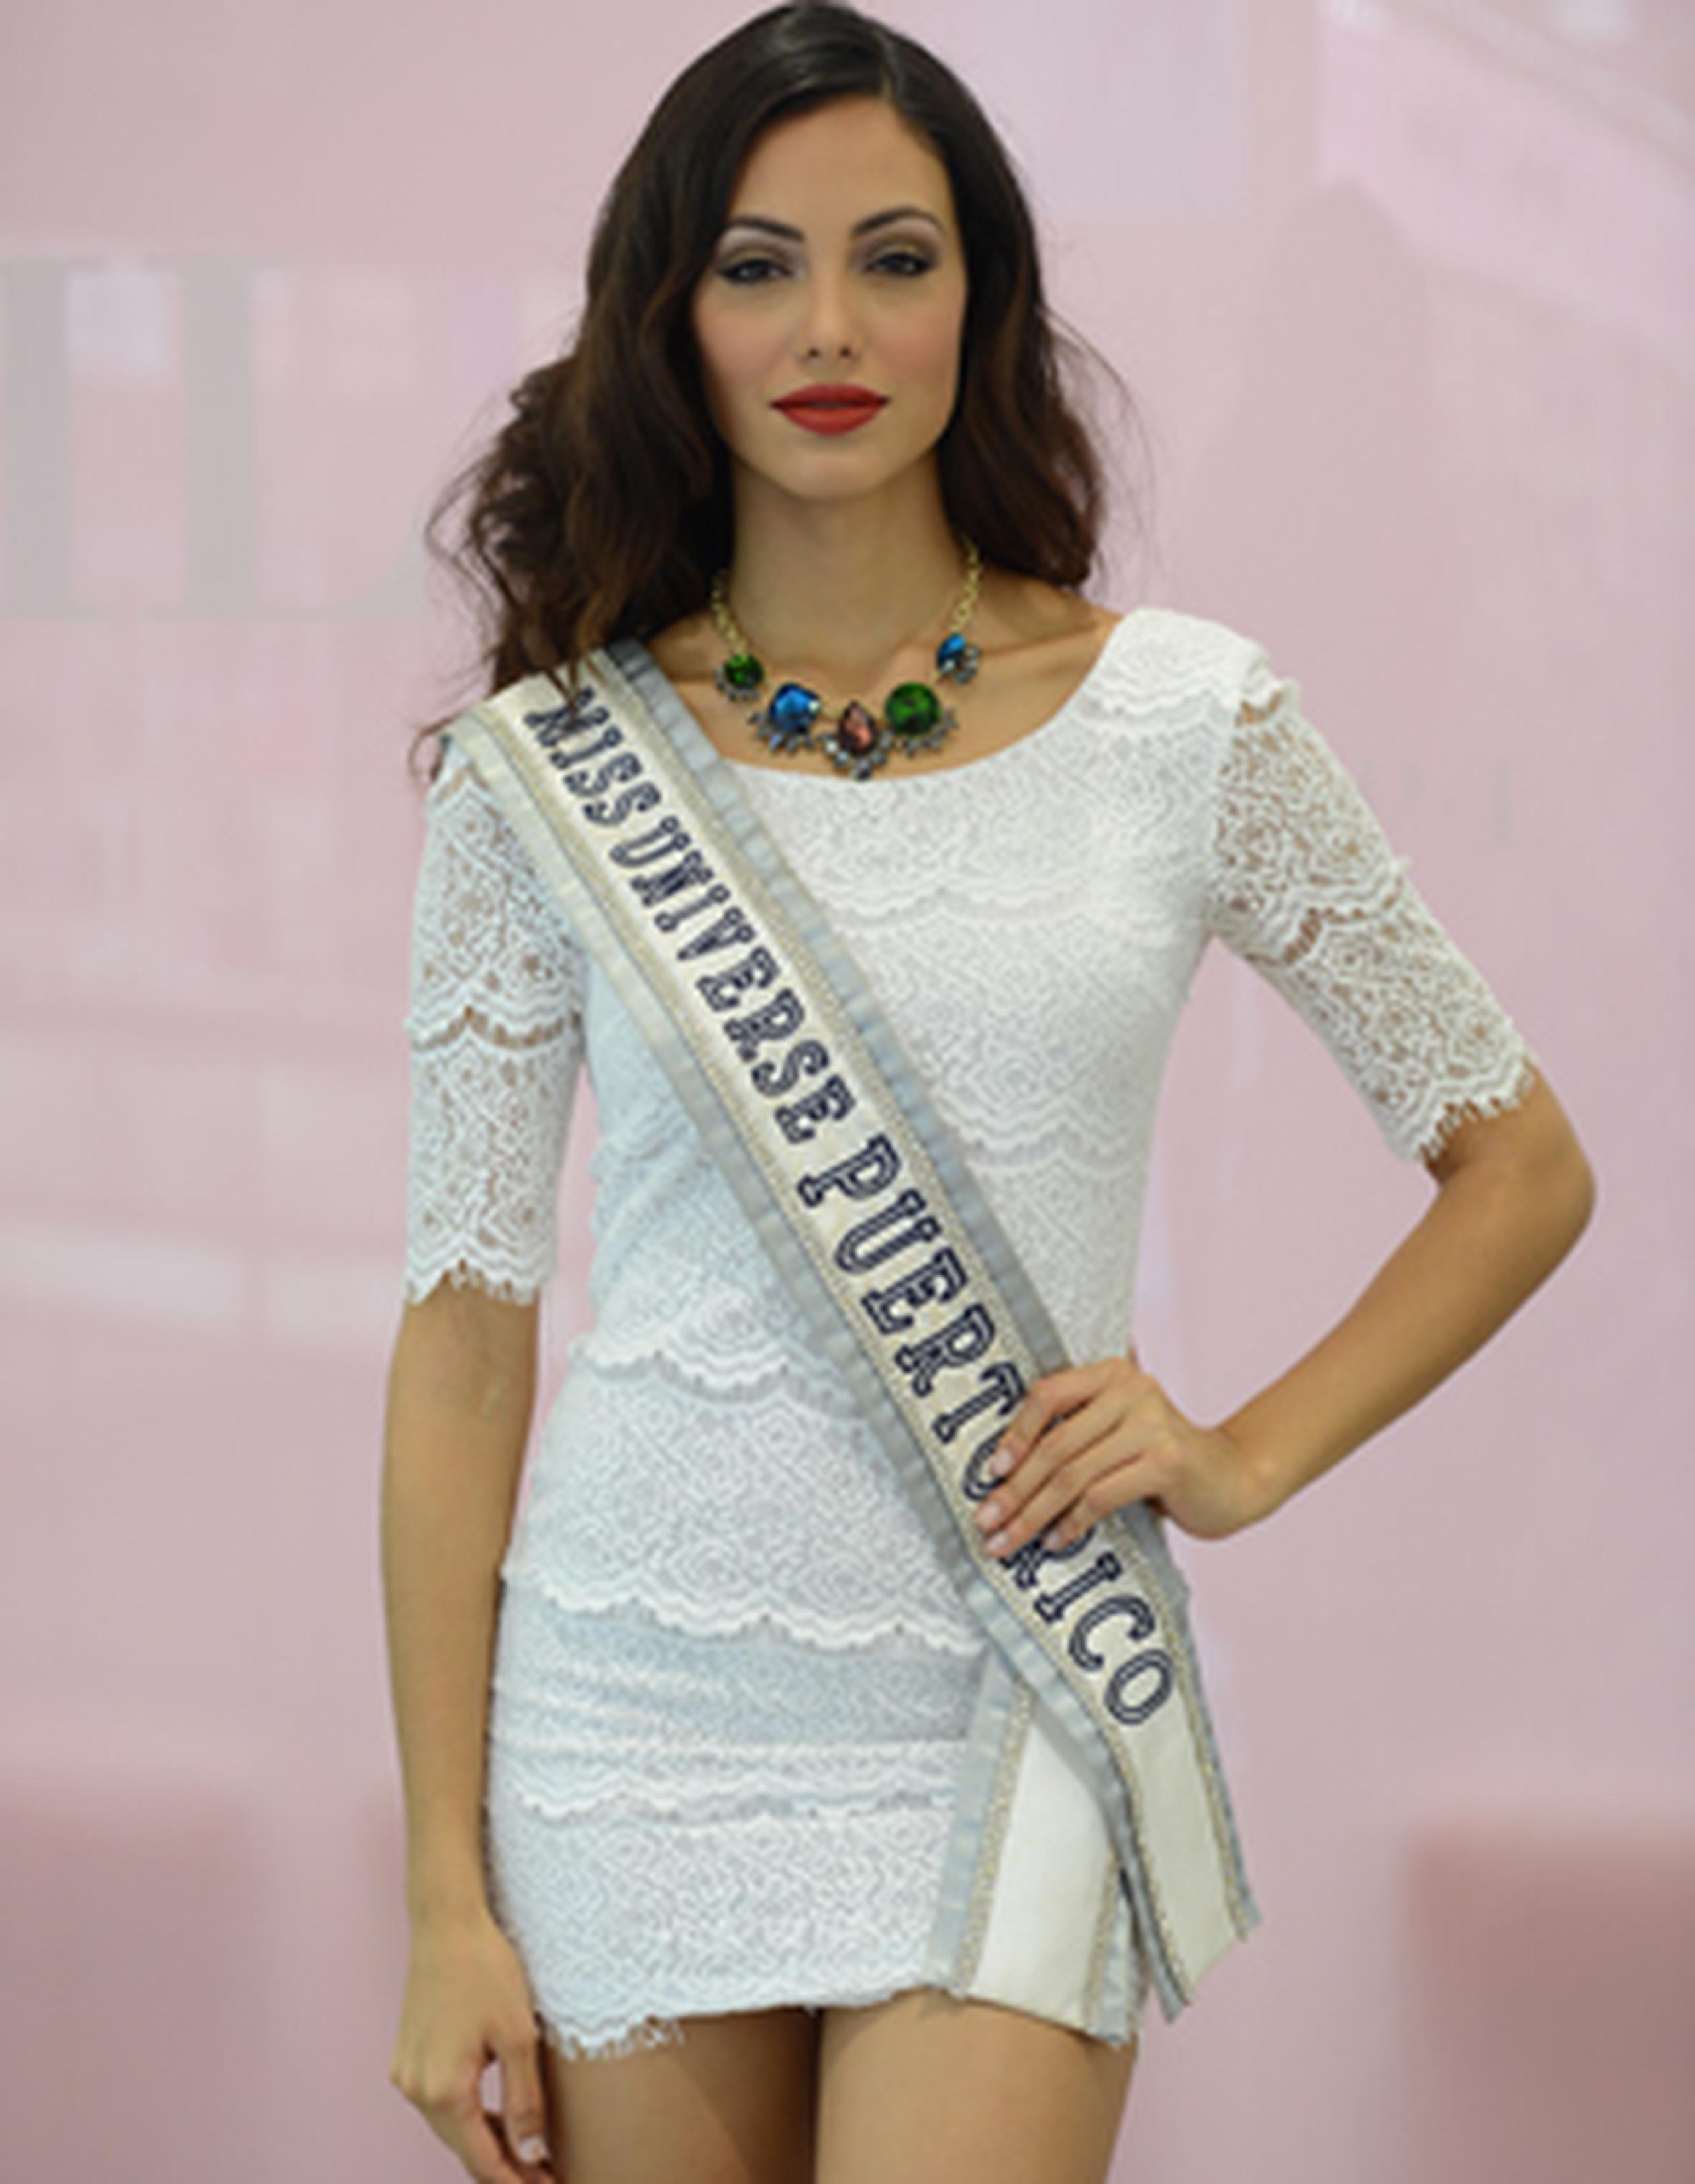 Miss Universe Puerto Rico 2013 destacó que ya no tendrá que volver al quirófano y que lo único que le queda por “arreglarse” es su sonrisa. (luis.alcaladelolmo@gfrmedia.com)